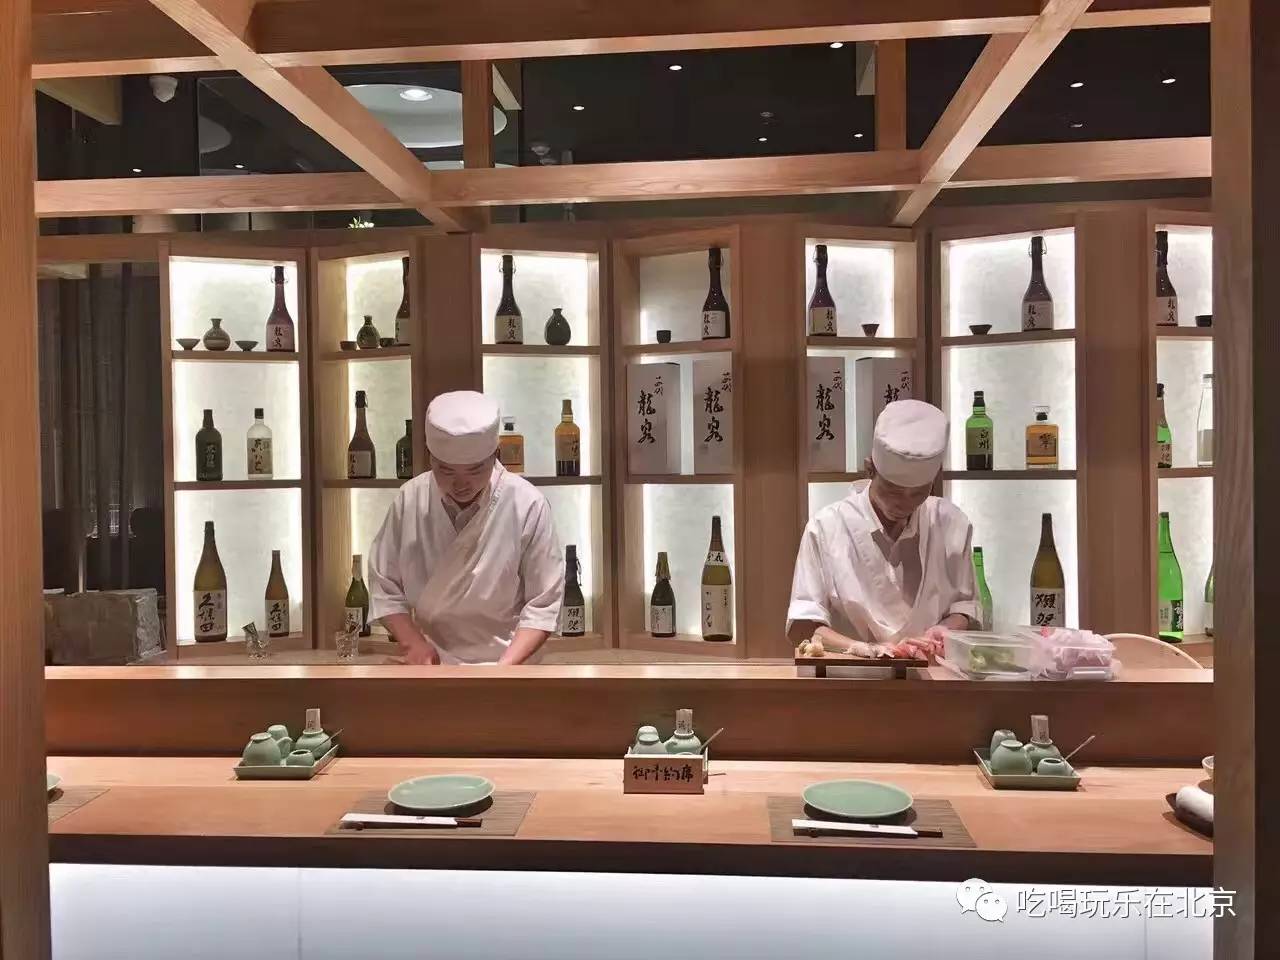 人均500的高端日料店,开了北京第一家专业寿司